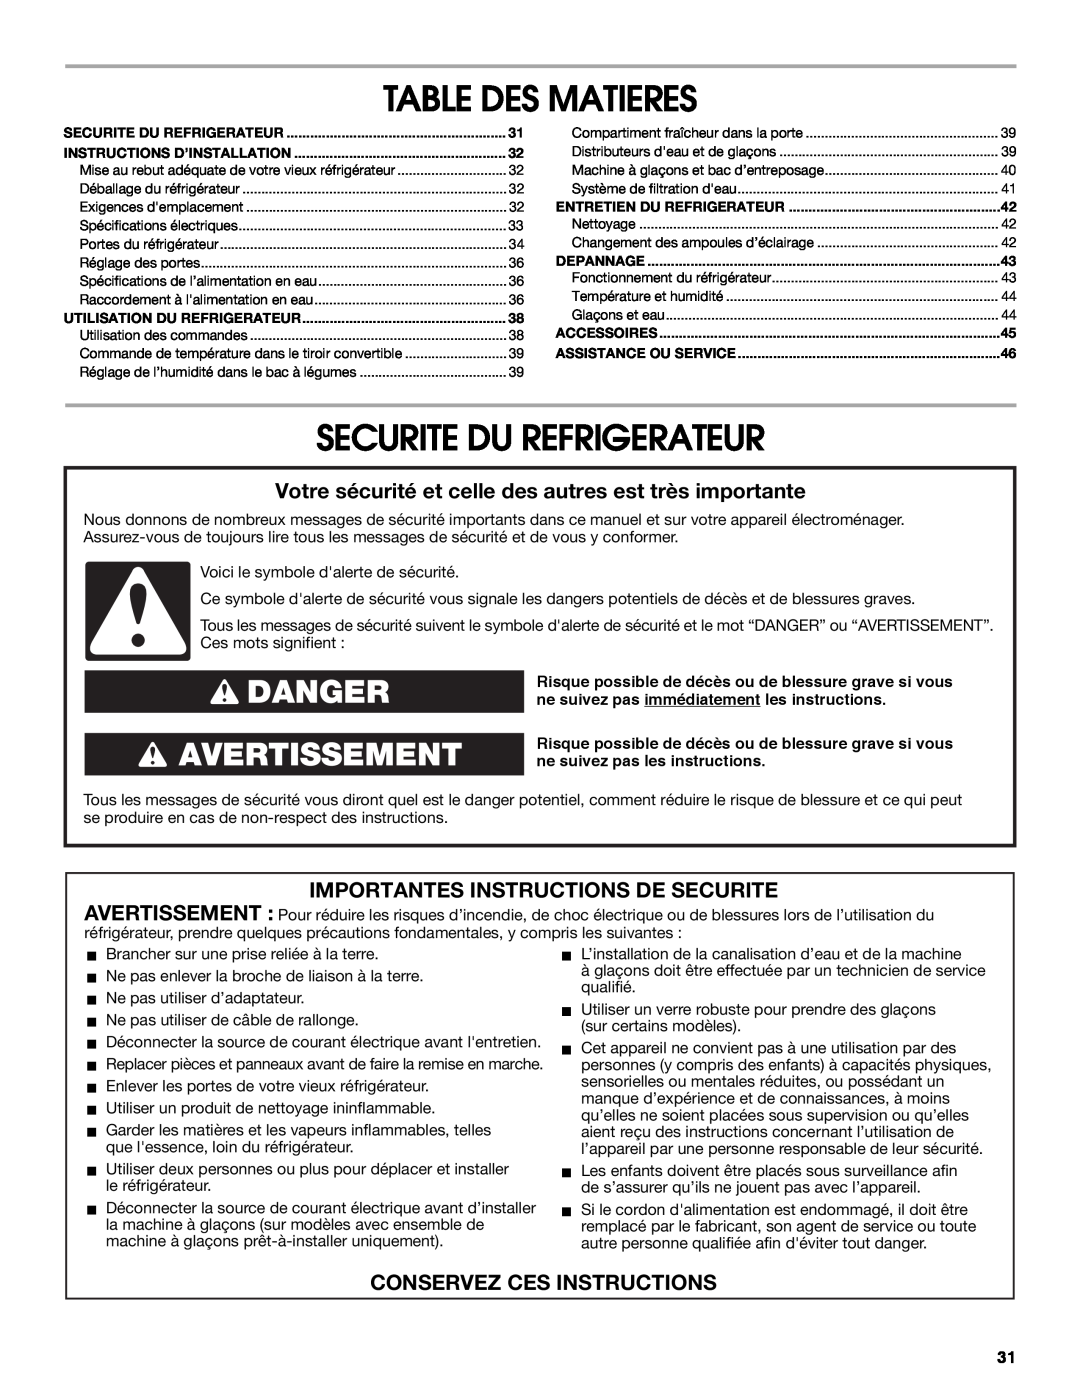 Whirlpool W10266784A manual Table Des Matieres, Securite Du Refrigerateur, Danger Avertissement, Conservez Ces Instructions 